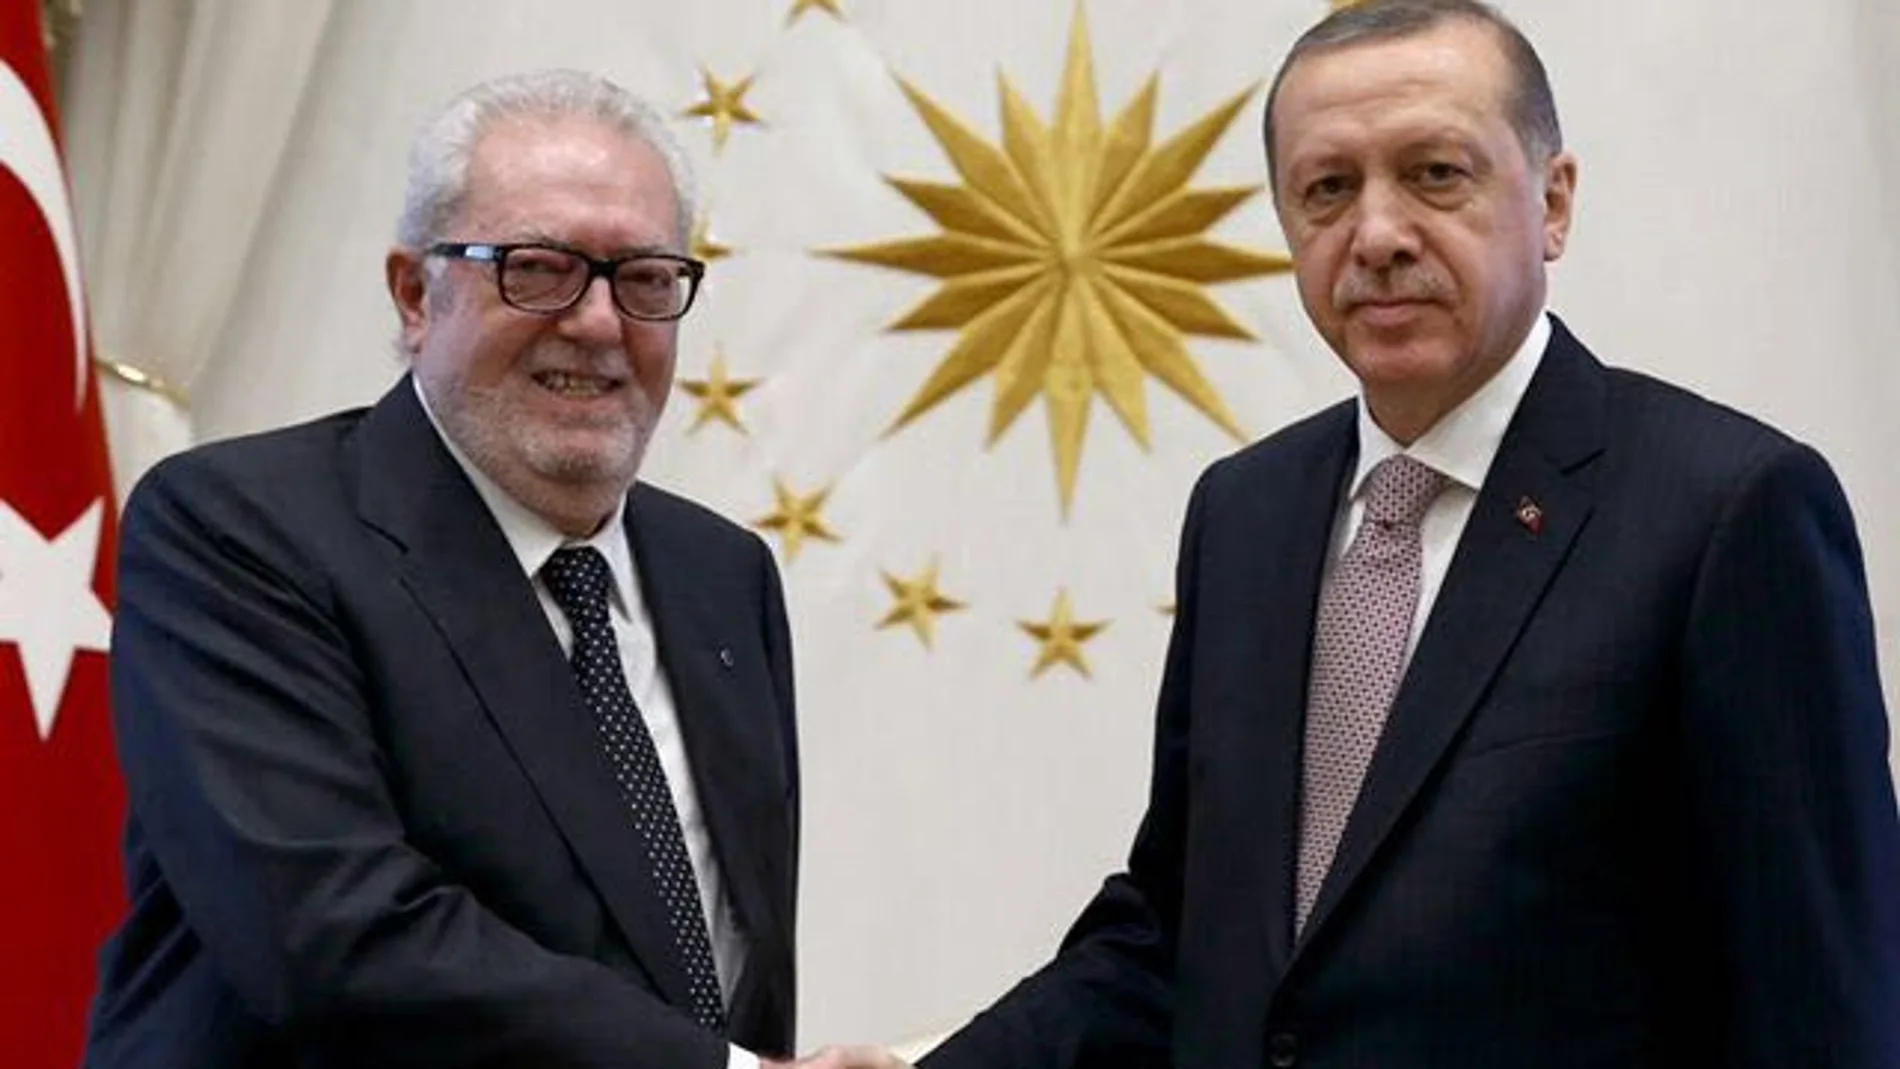 El presidente de la Asamblea Parlamentaria del Consejo de Europa, Agramunt, durante su encuentro con Erdogan